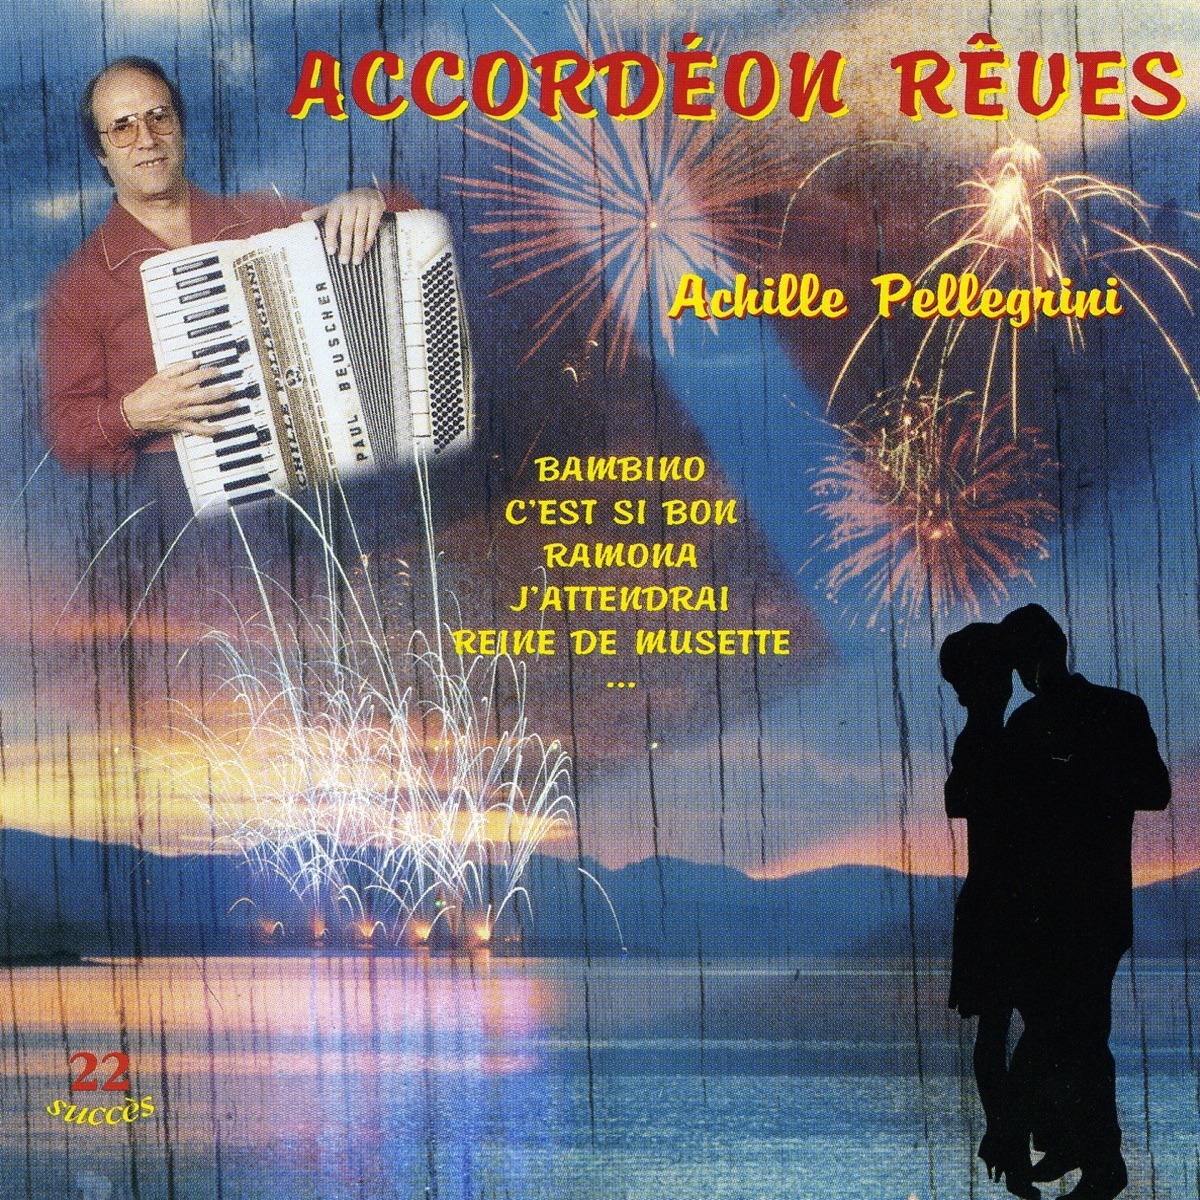 Accordéon rêves – Album par Achille Pellegrini – Apple Music